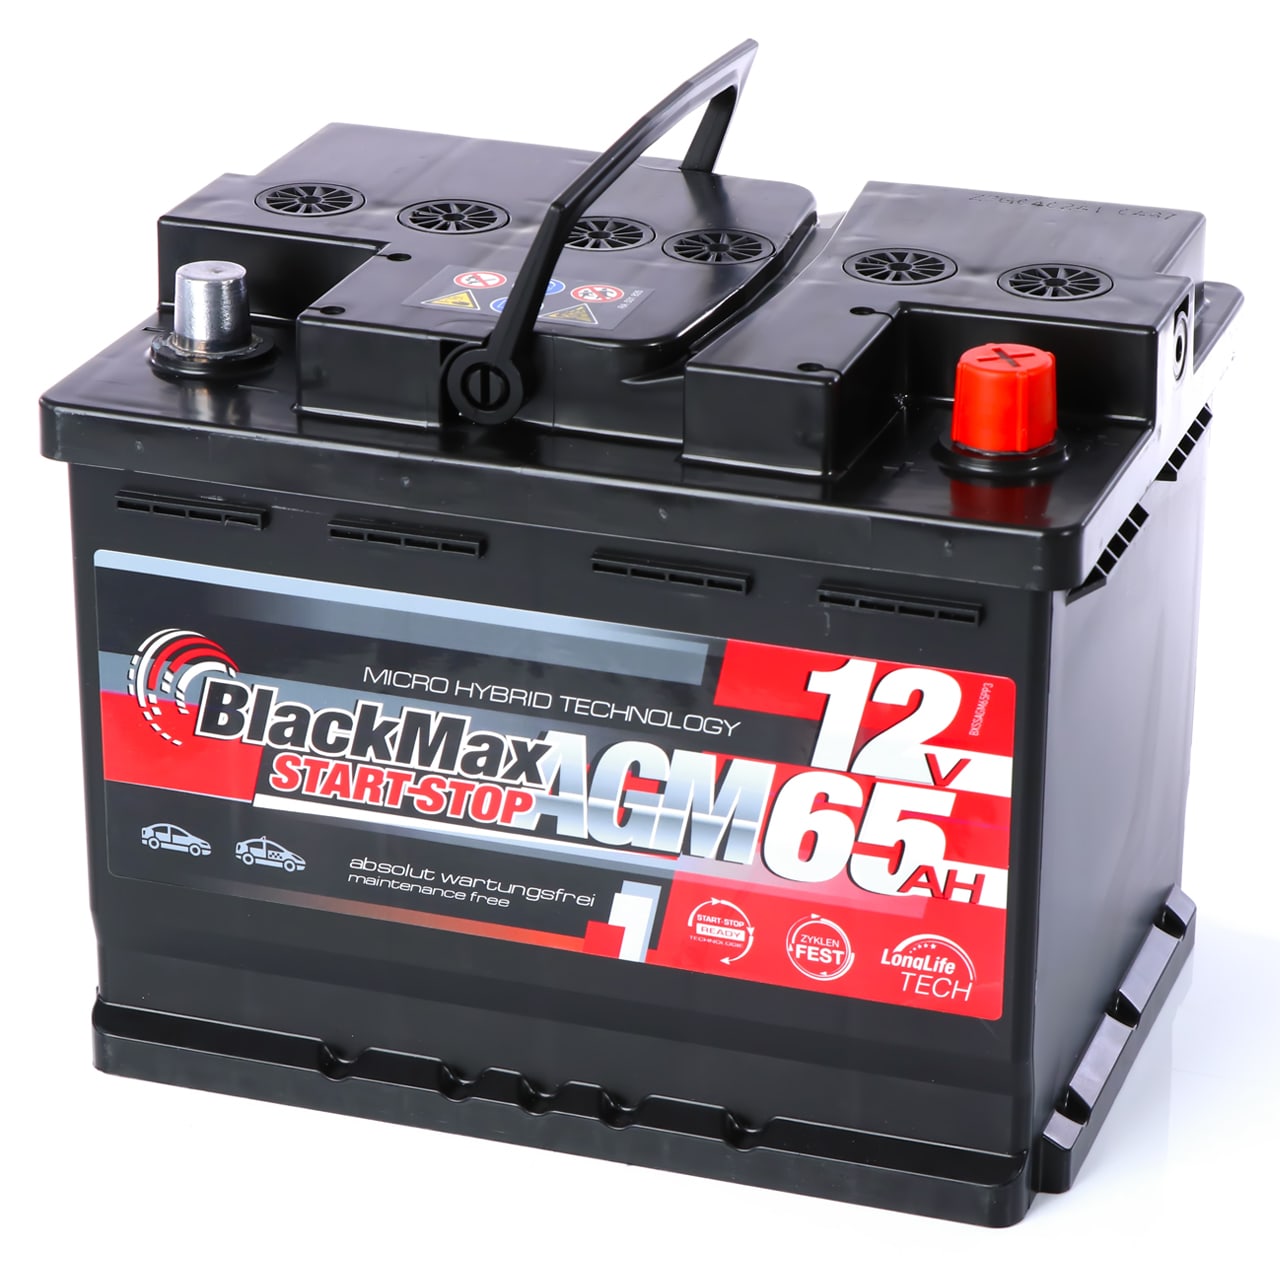 Autobatterie 68AH Start-Stop  Preisvergleich bei